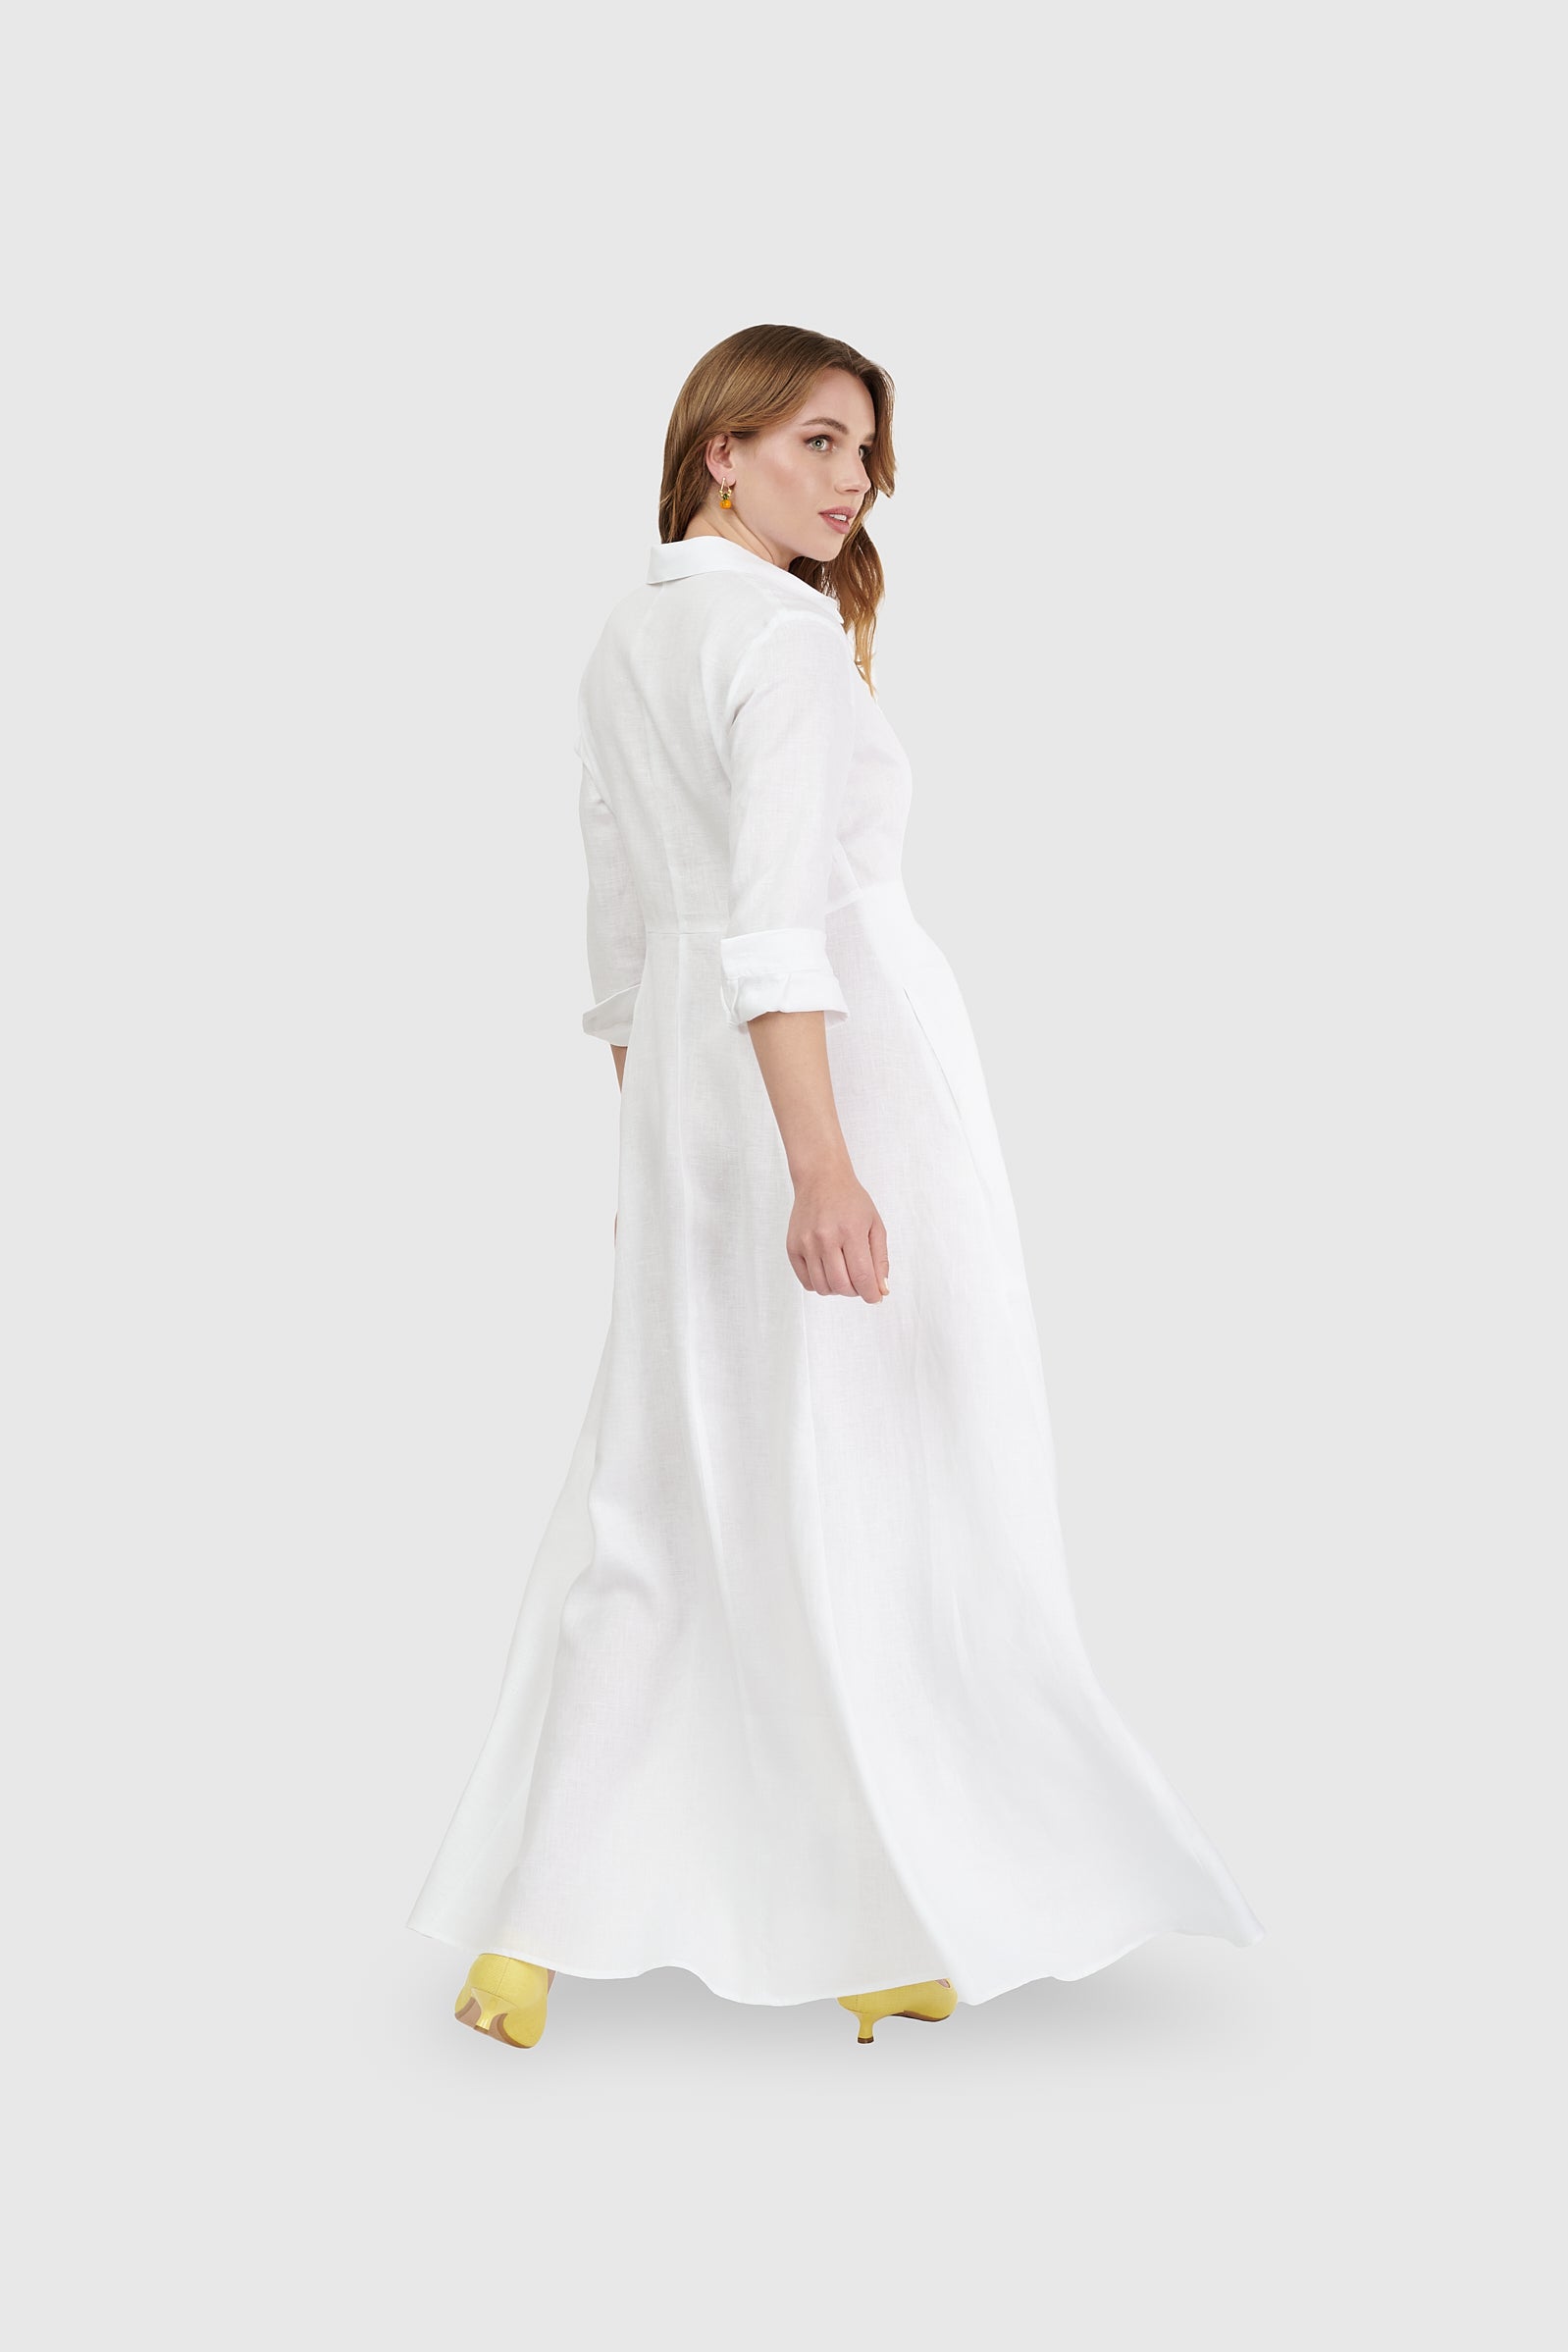 Vestido  largo camisero lino blanco